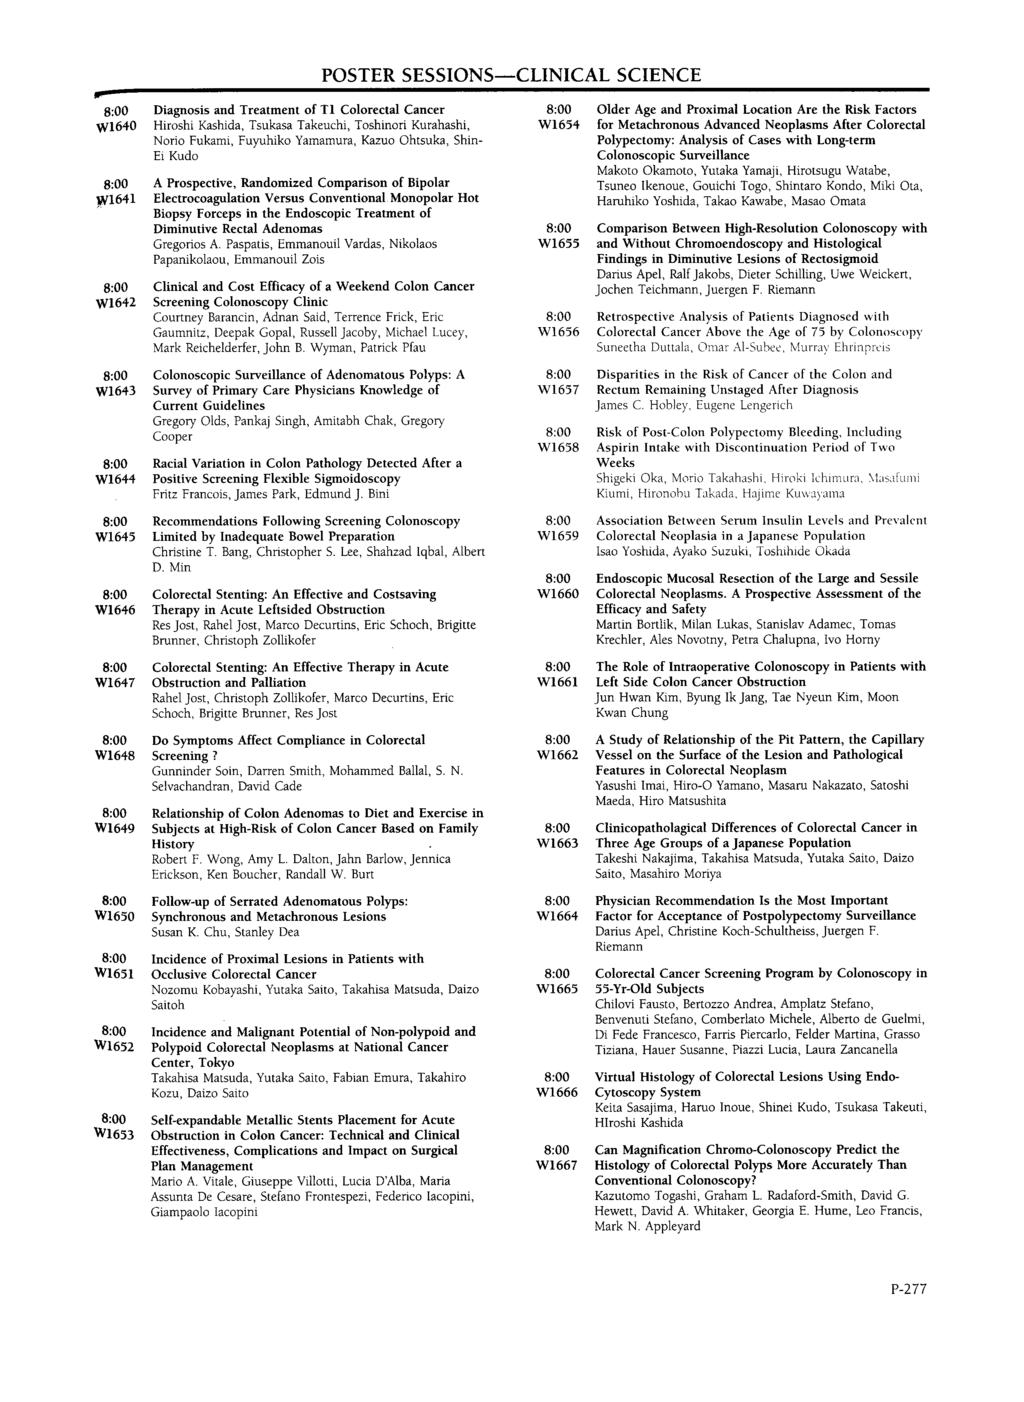 POSTR SSSIONSmCLINICAL SCINC W1640 ~1641 W1642 iagnosis and Treatment of T1 Colorectal Cancer Hiroshi Kashida, Tsukasa Takeuchi, Toshinori Kurahashi, Norio Fukami, Fuyuhiko Yamamura, Kazuo Ohtsuka,